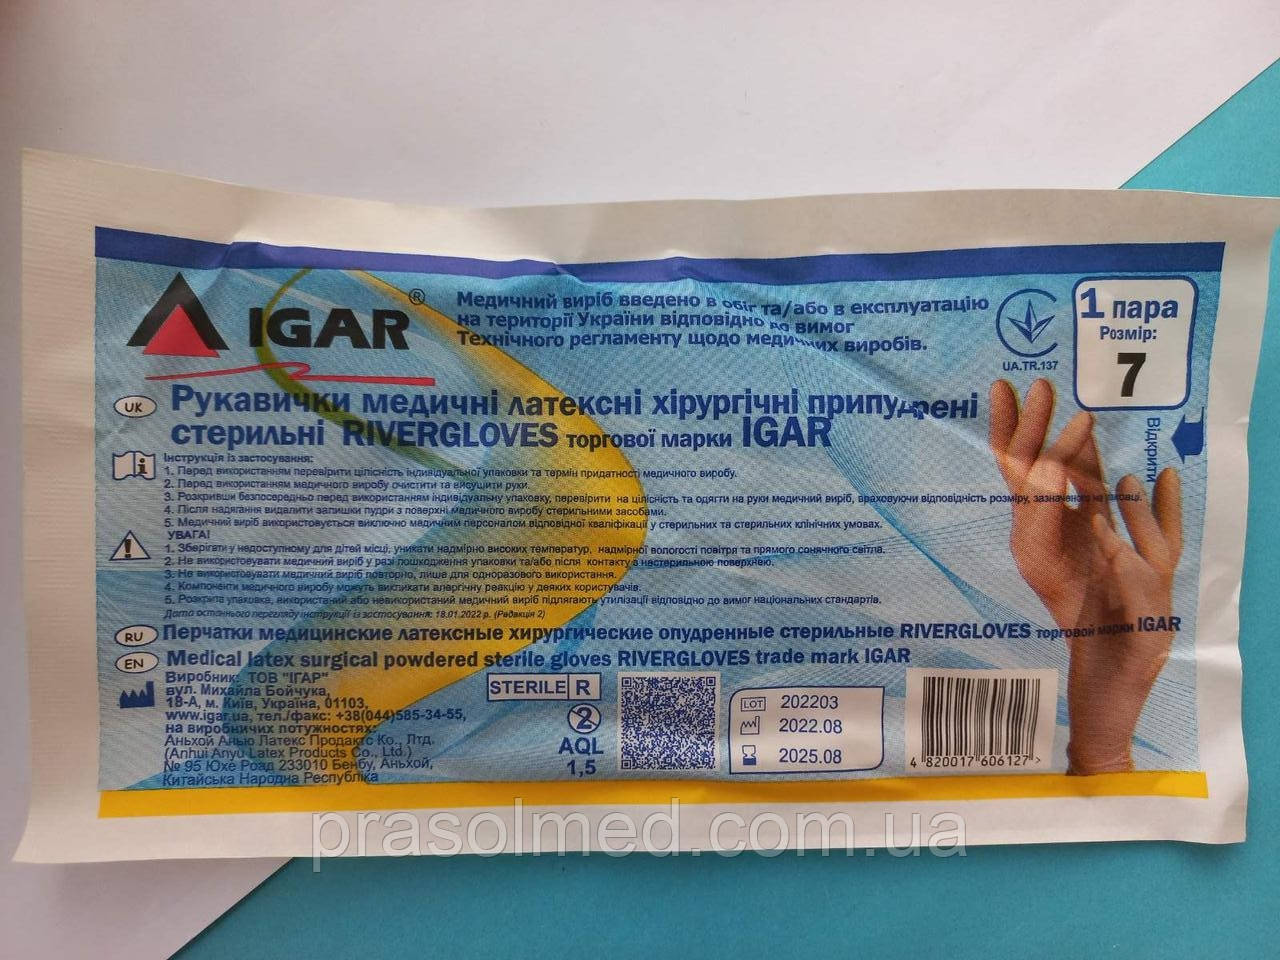 Рукавички латексні припудрені хірургічні стерильні RIVERGLOVES торгової марки "IGAR " р.7  (50пар/100шт в уп.)